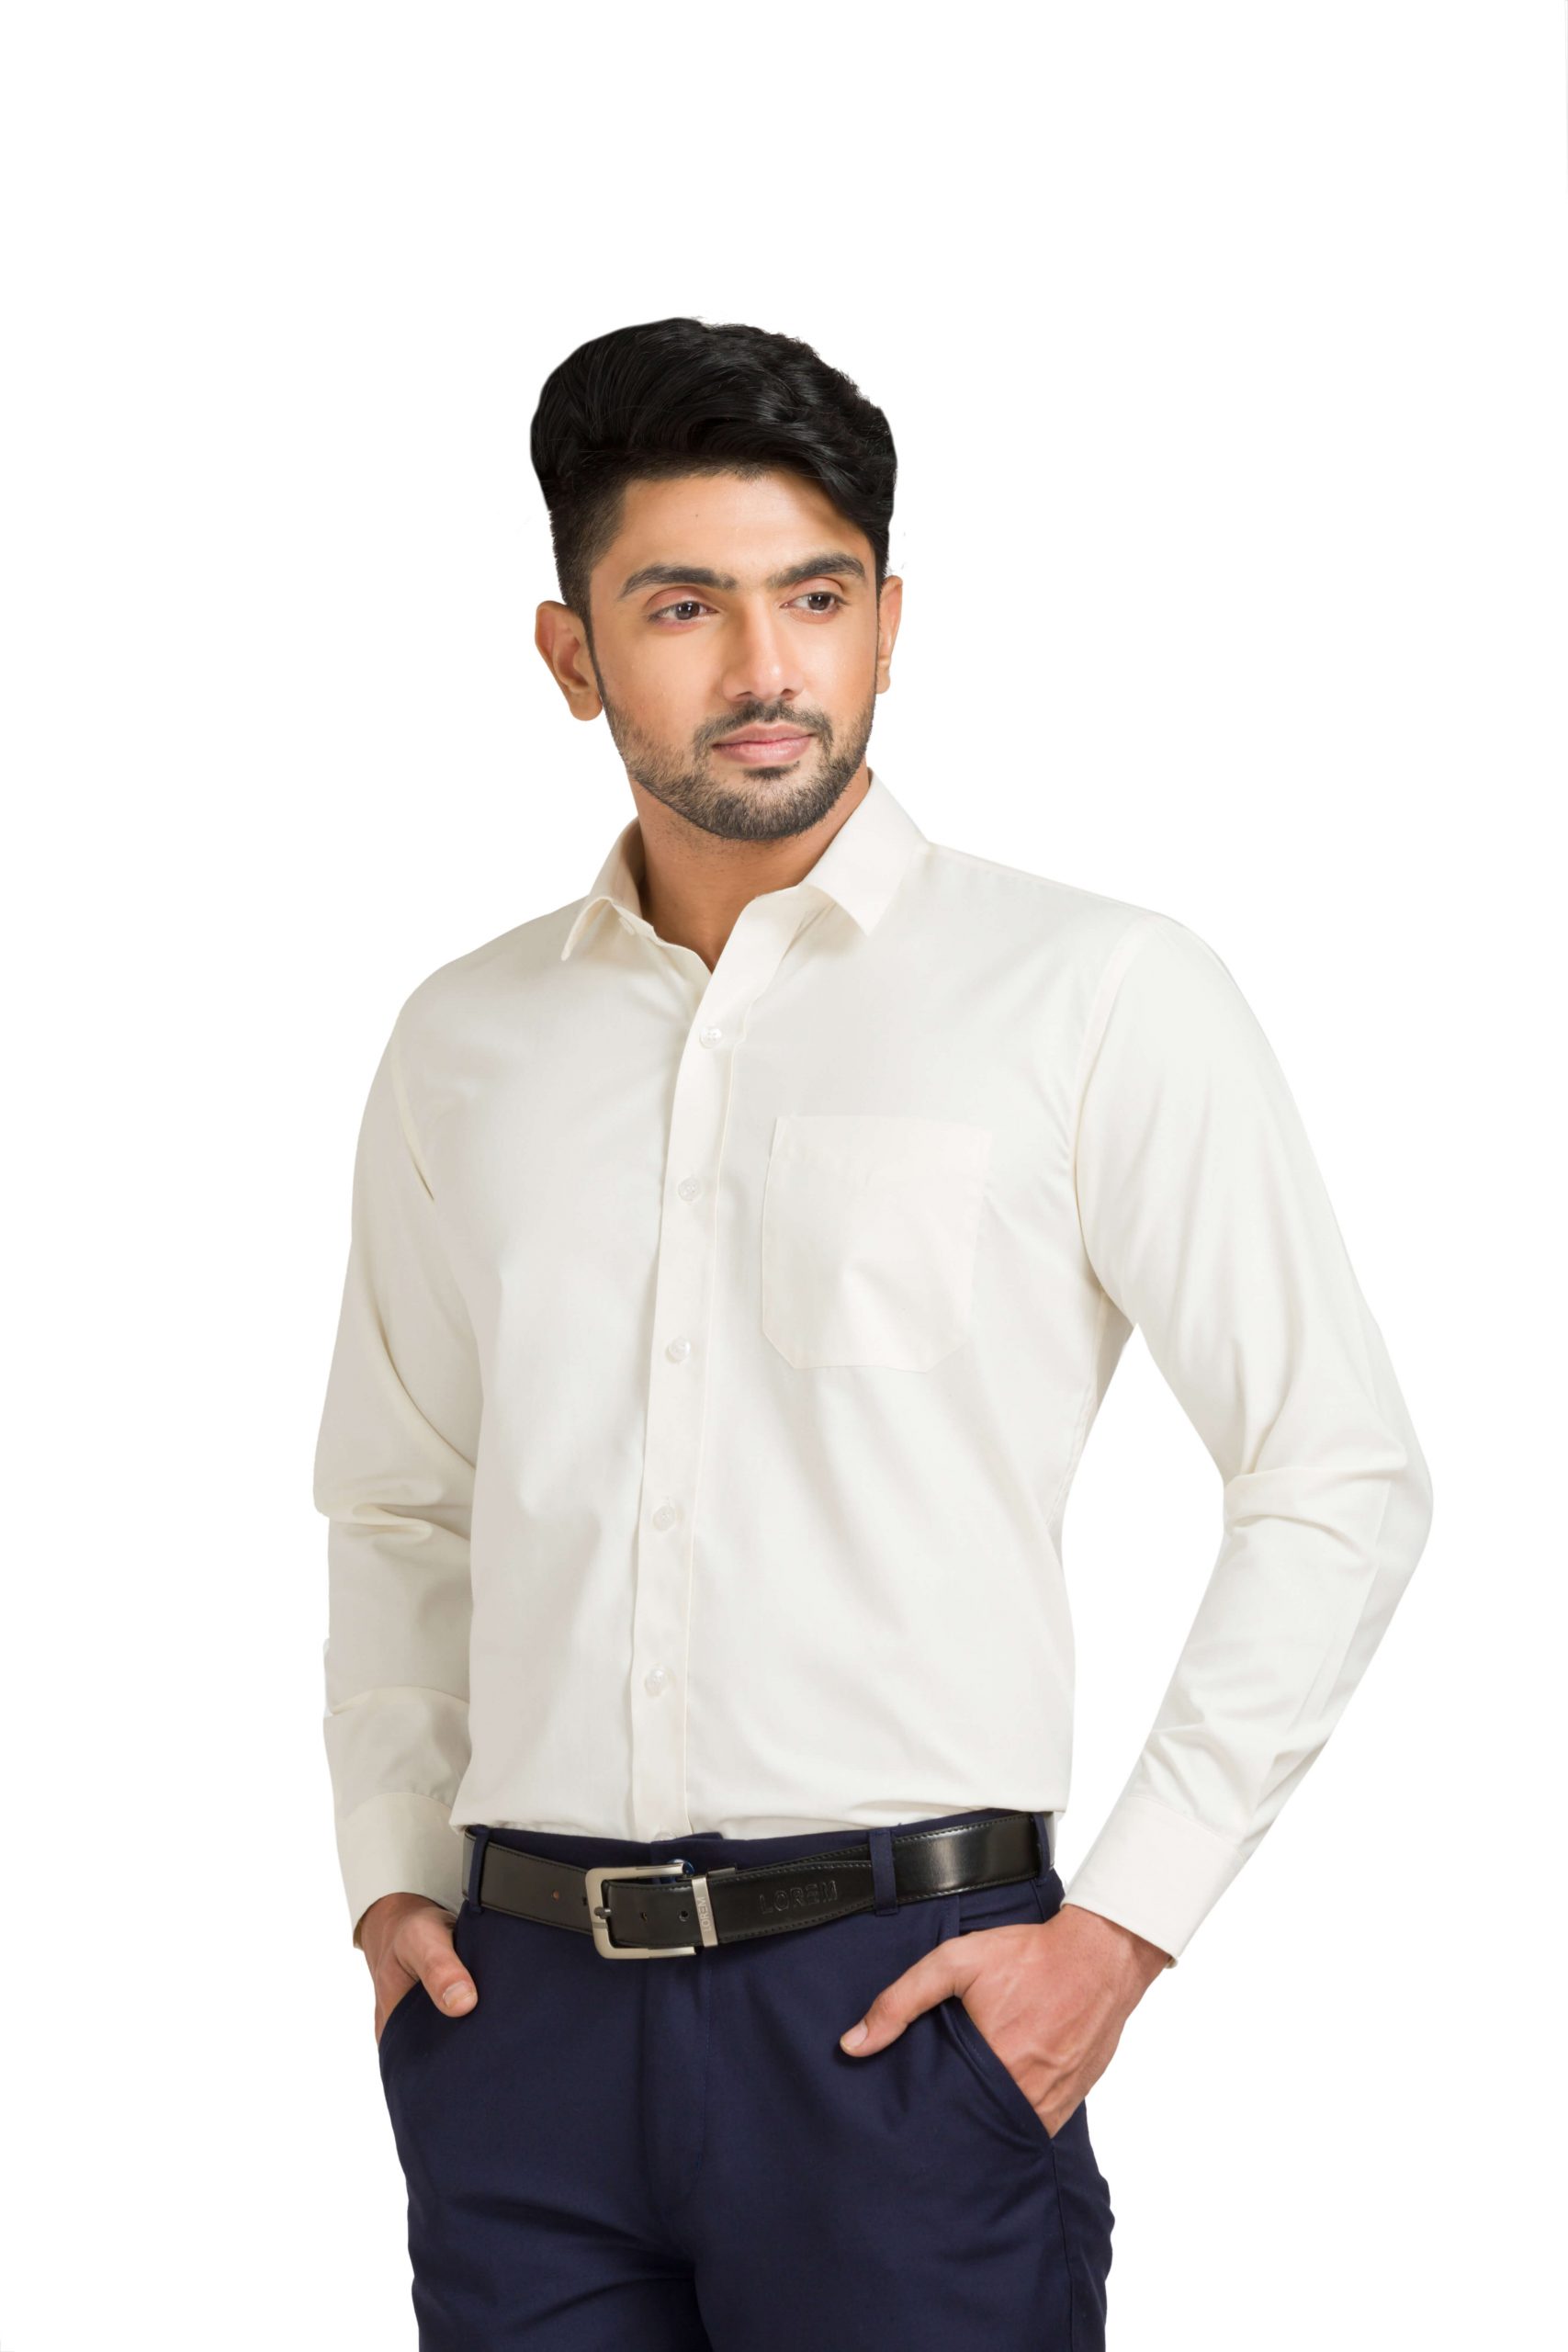 Off White Cotton Blend Full Sleeve Formal Shirt For Men